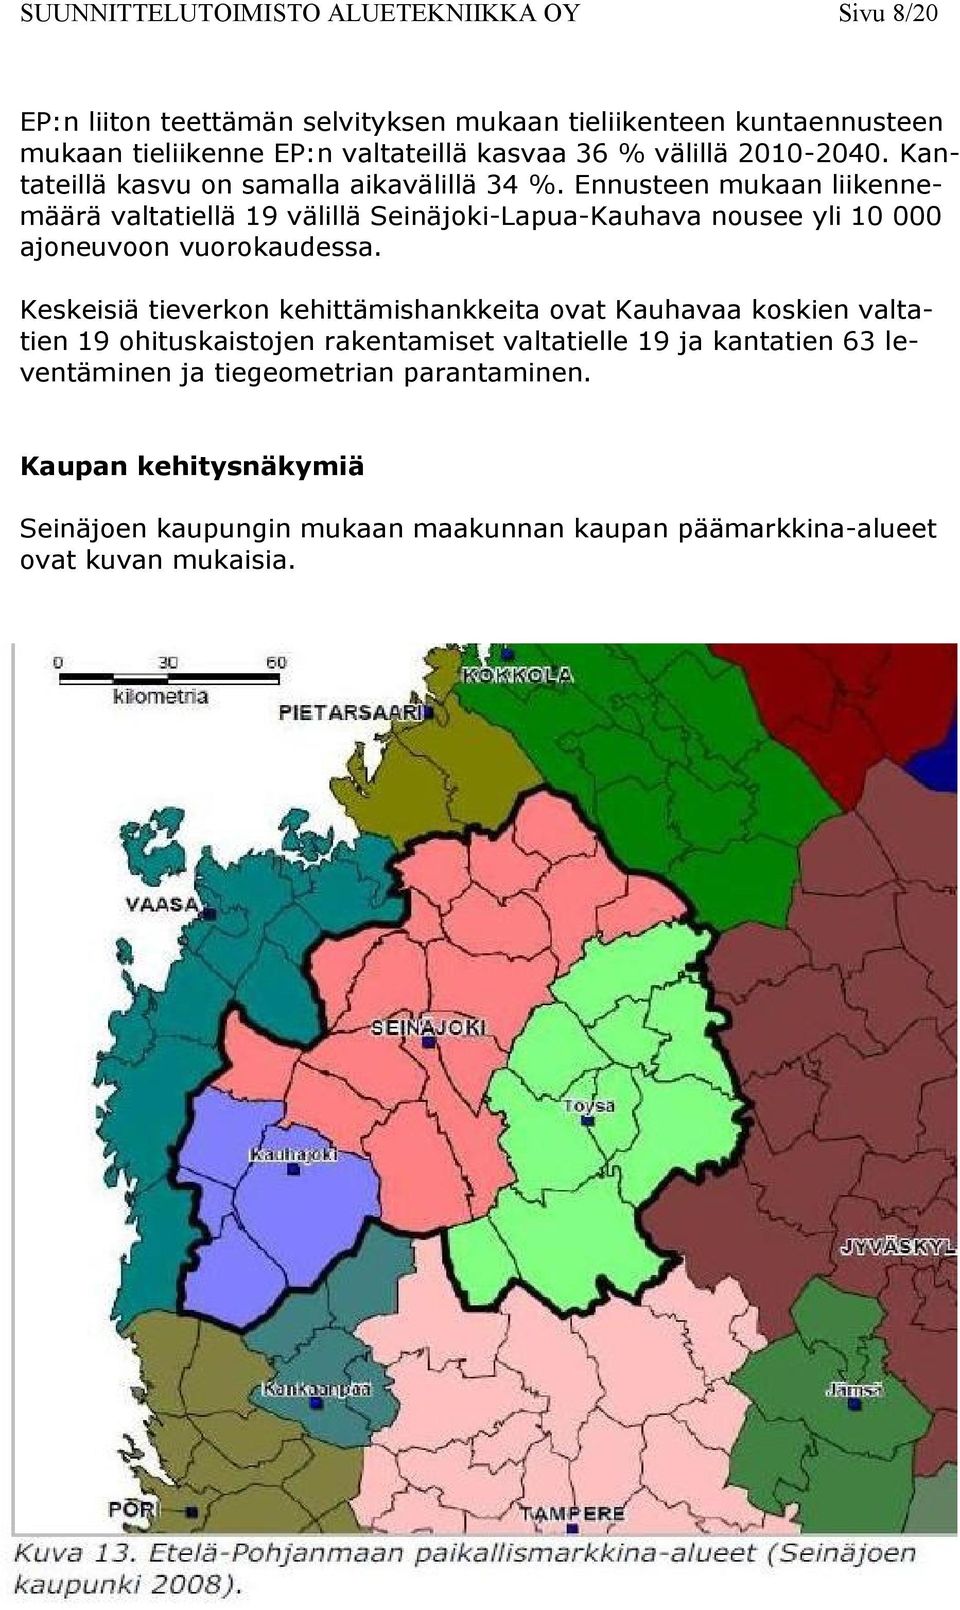 Ennusteen mukaan liikennemäärä valtatiellä 19 välillä Seinäjoki-Lapua-Kauhava nousee yli 10 000 ajoneuvoon vuorokaudessa.